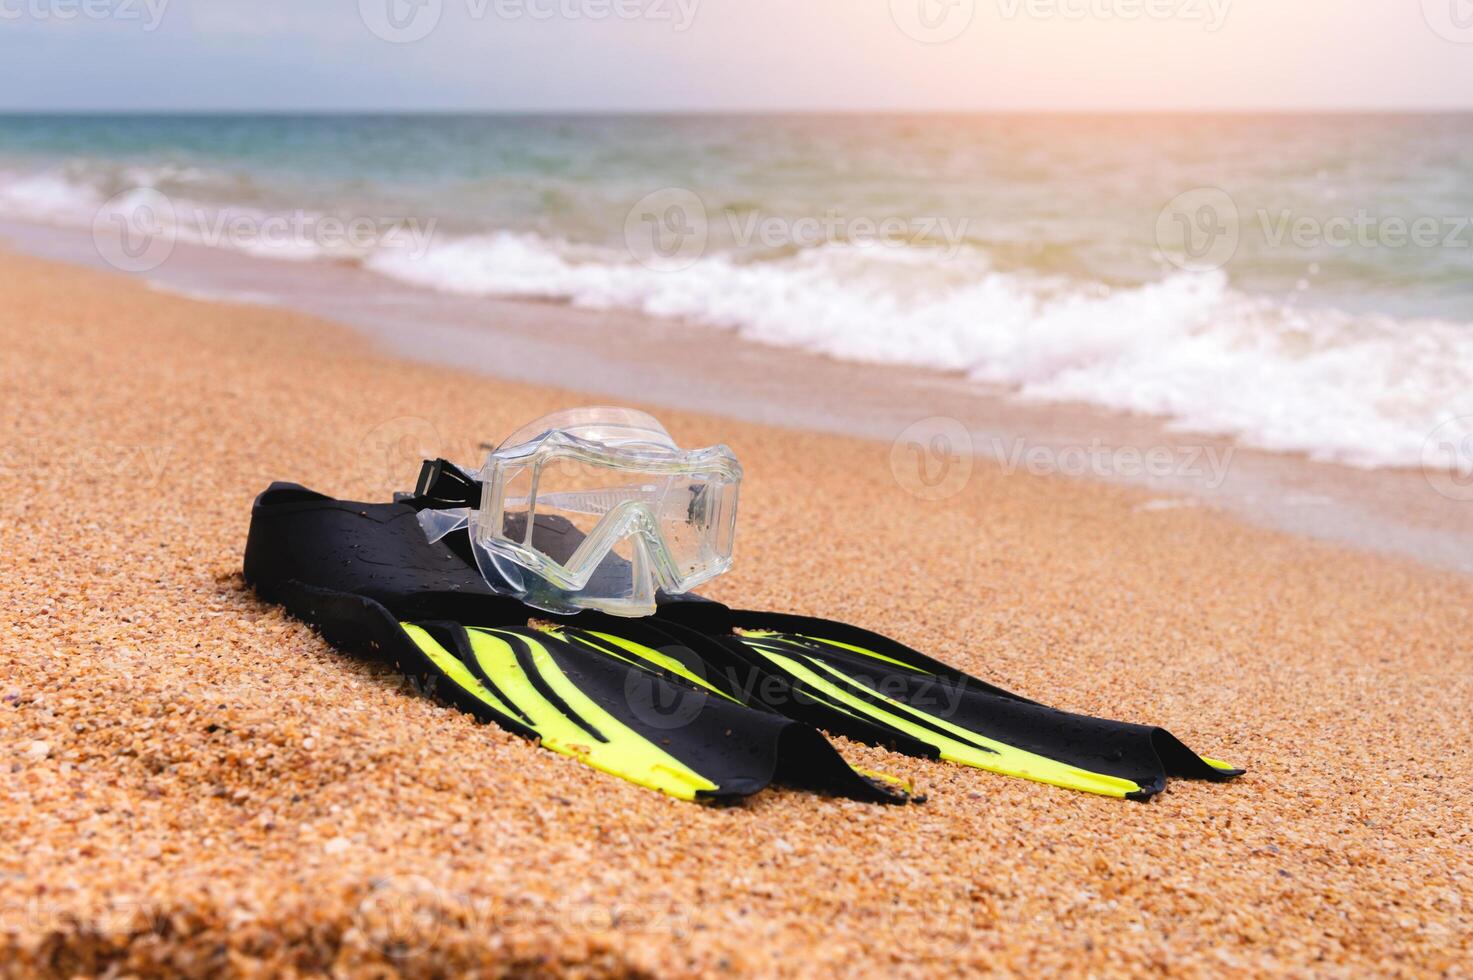 Ondiep diepte van veld- snorkelen masker met vinnen leugens Aan een zanderig strand met uitzicht de zee en lucht, Nee mensen foto